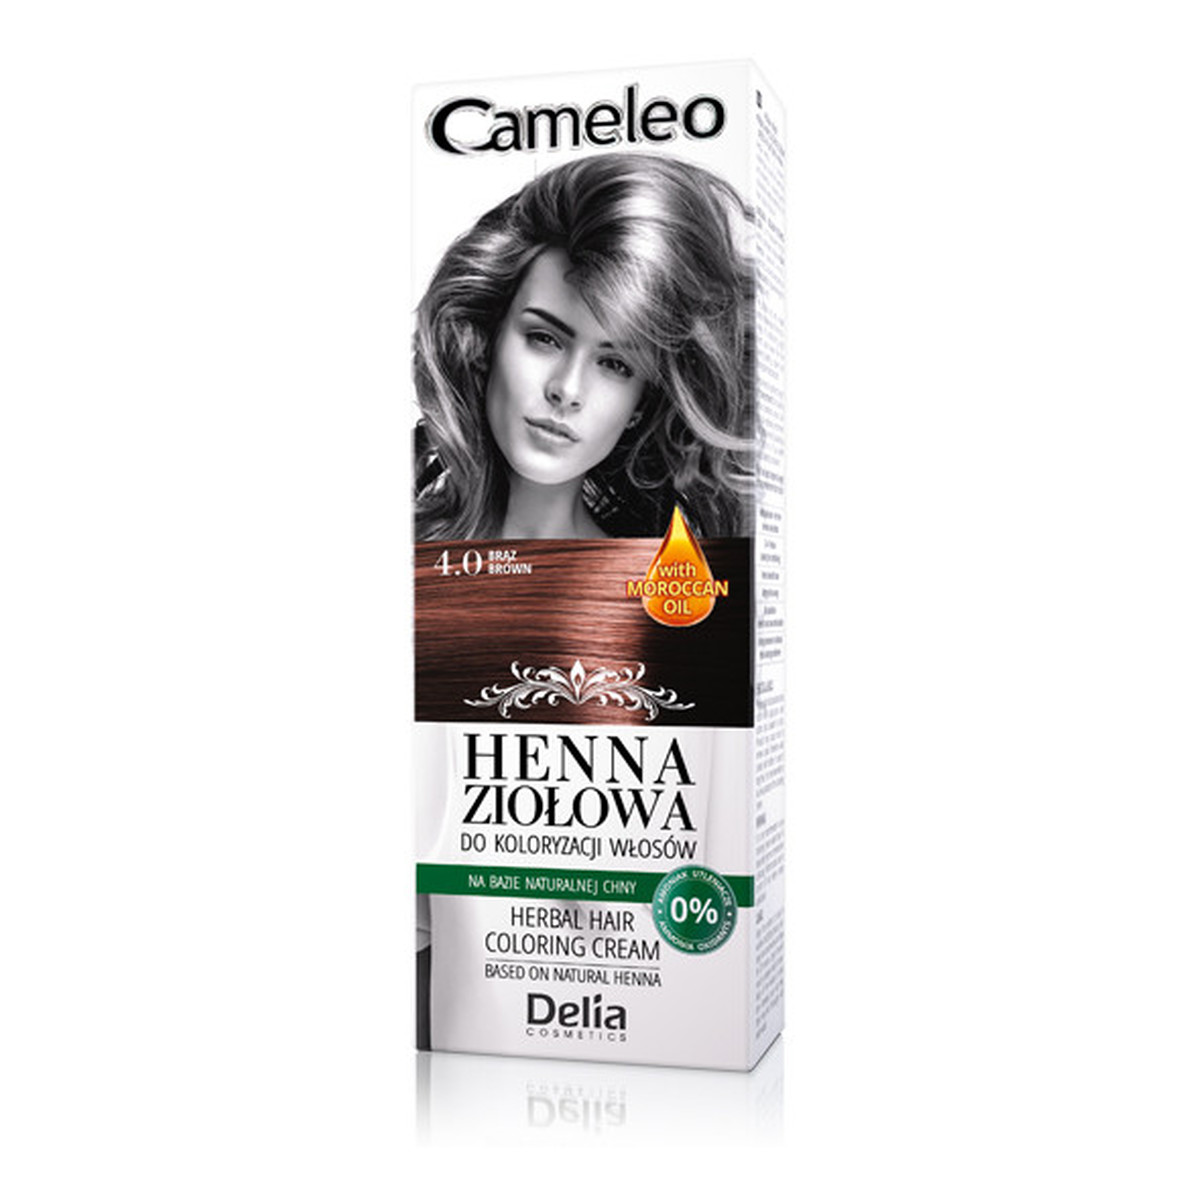 Cameleo Henna Creme Ziołowa Henna Do Koloryzacji Włosów